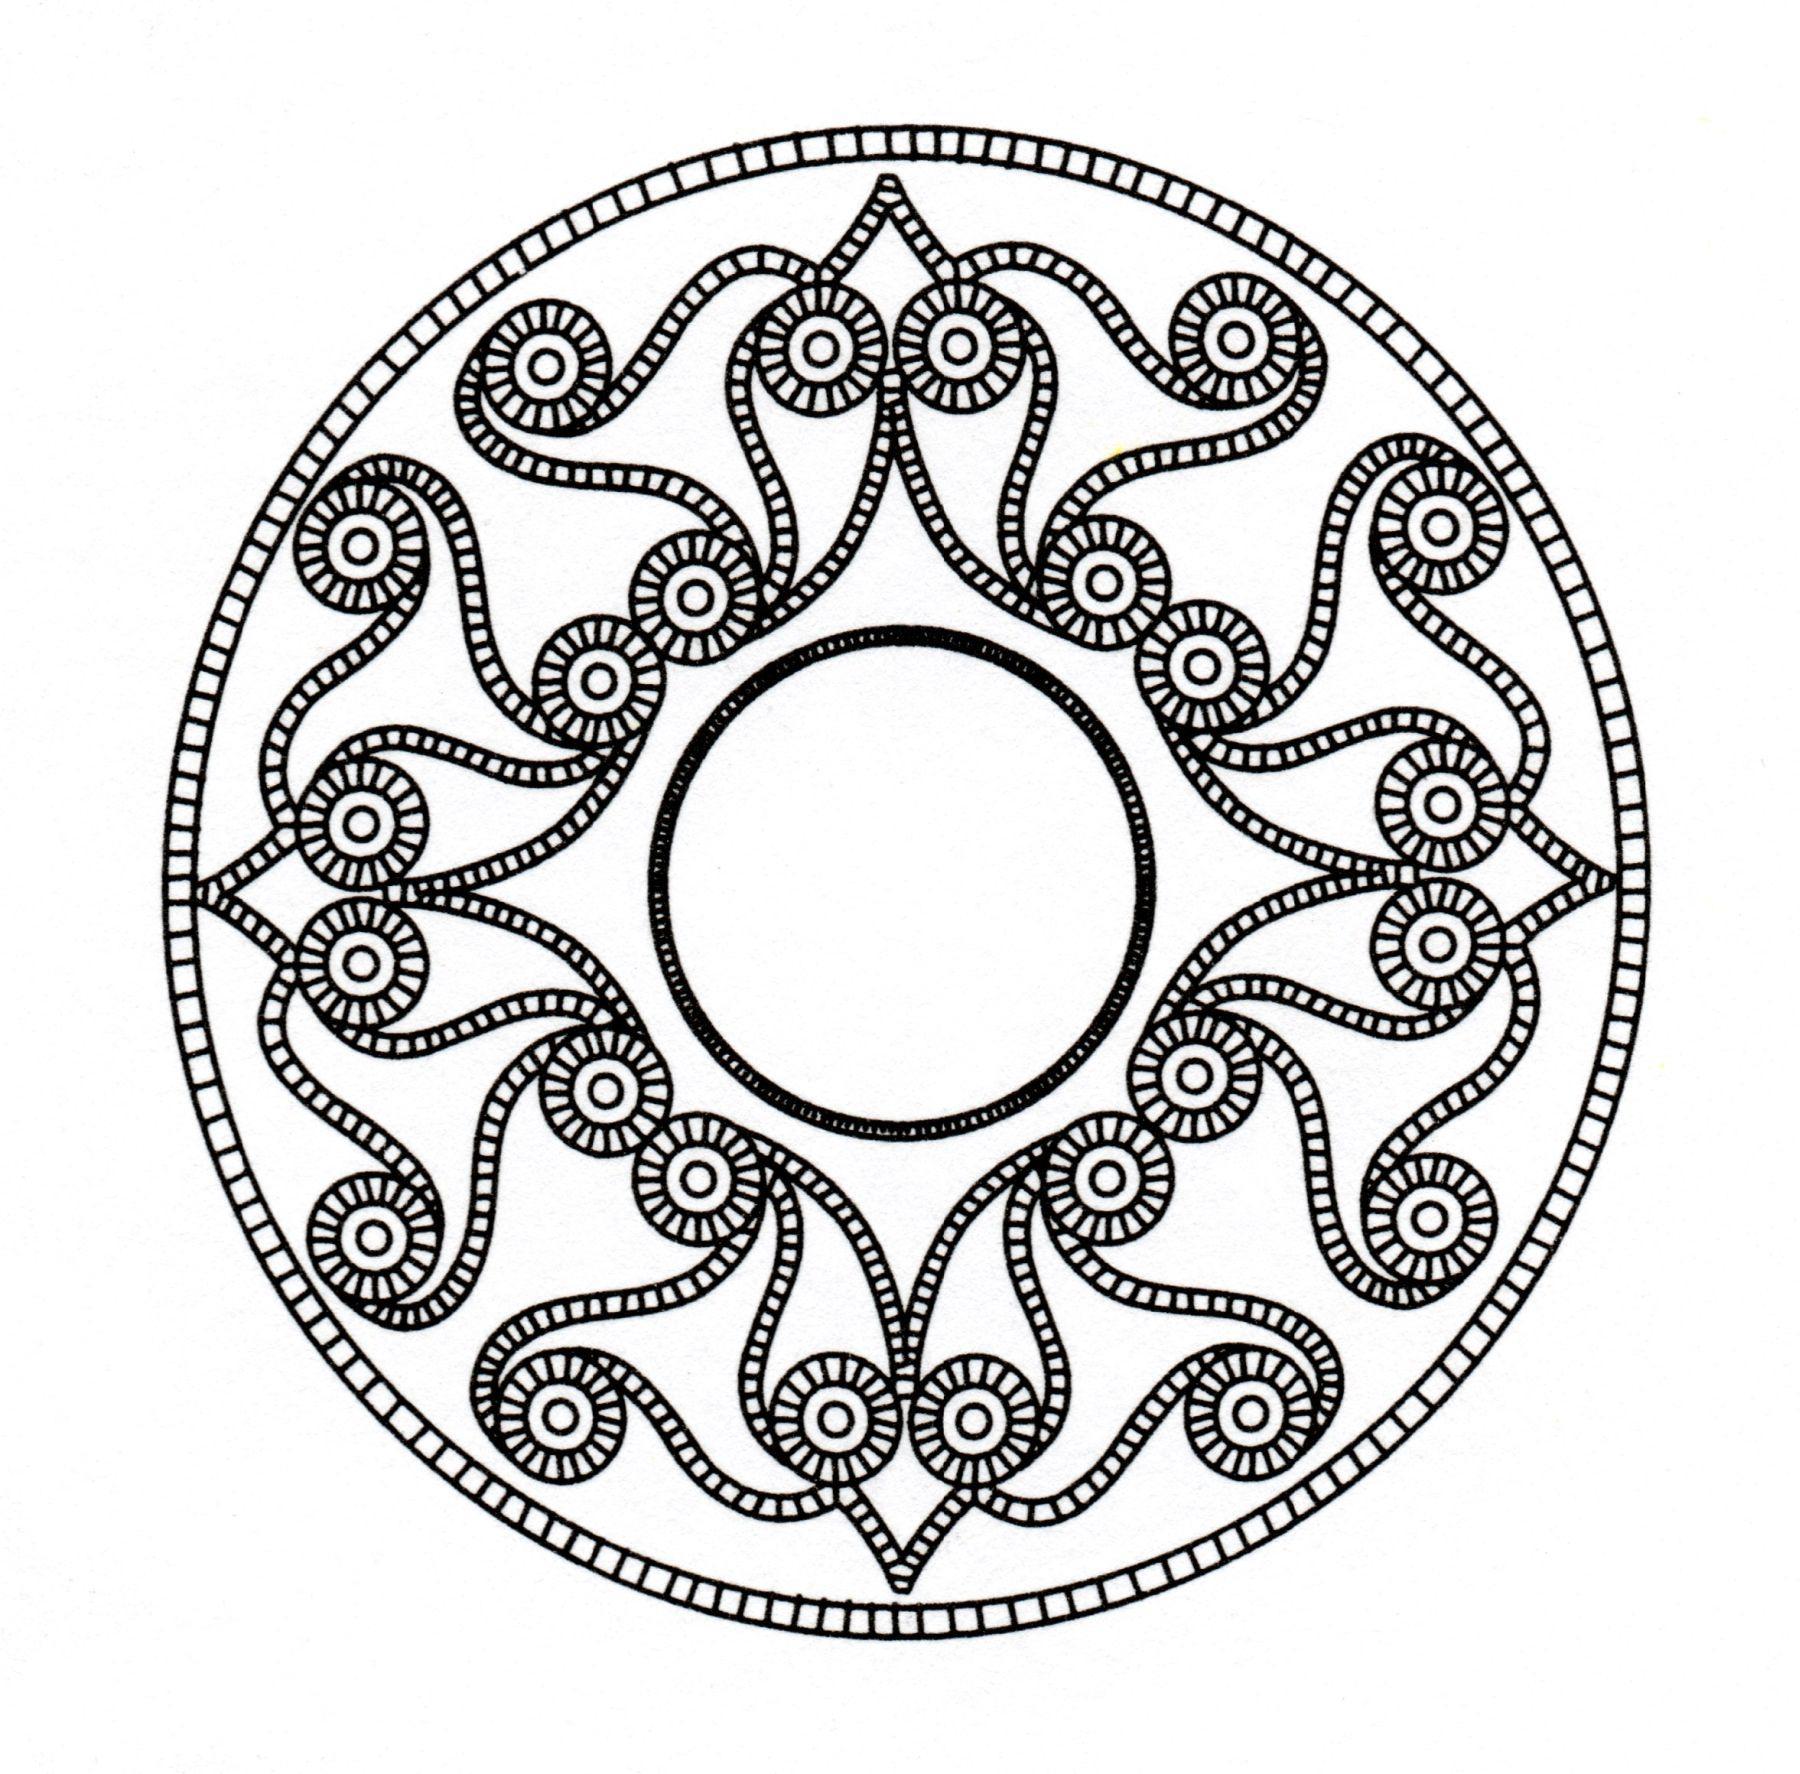 Si vous cherchez un Mandala style celtique pas trop compliqué à colorier, mais avec quand même un niveau de difficulté relatif, celui-ci est parfait pour vous.